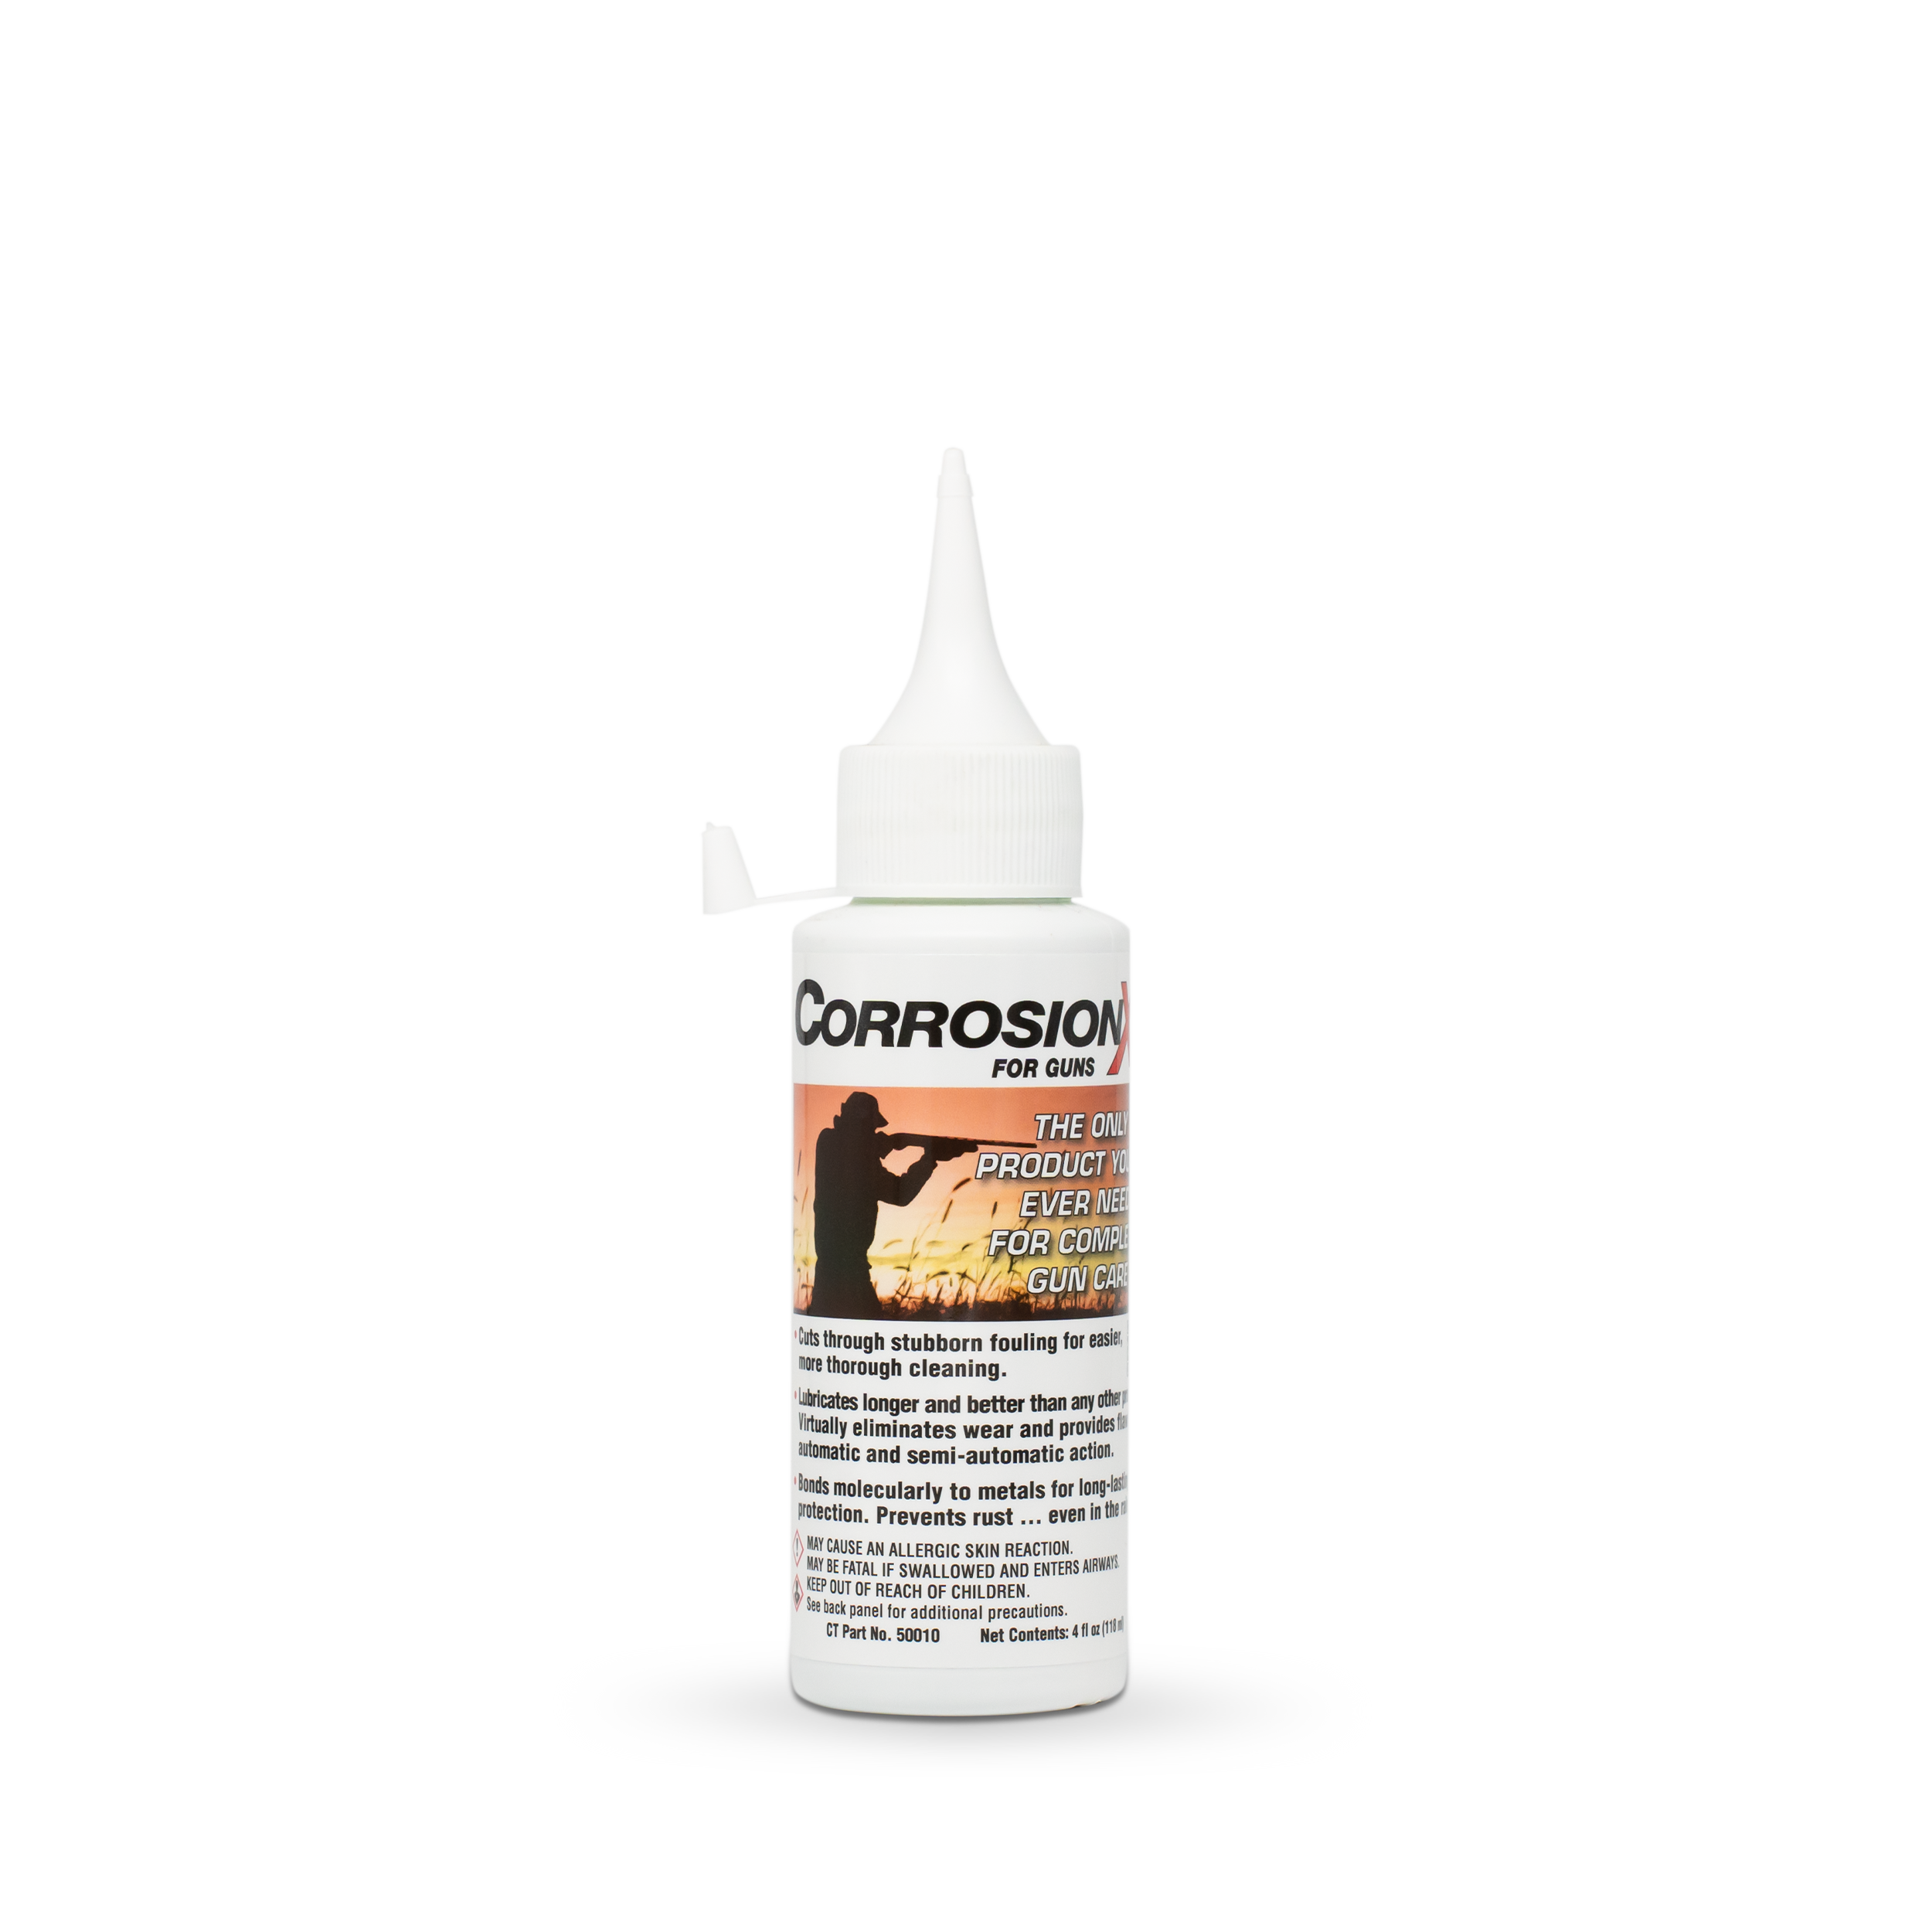 CorrosionX for Guns - 4oz applicator bottle